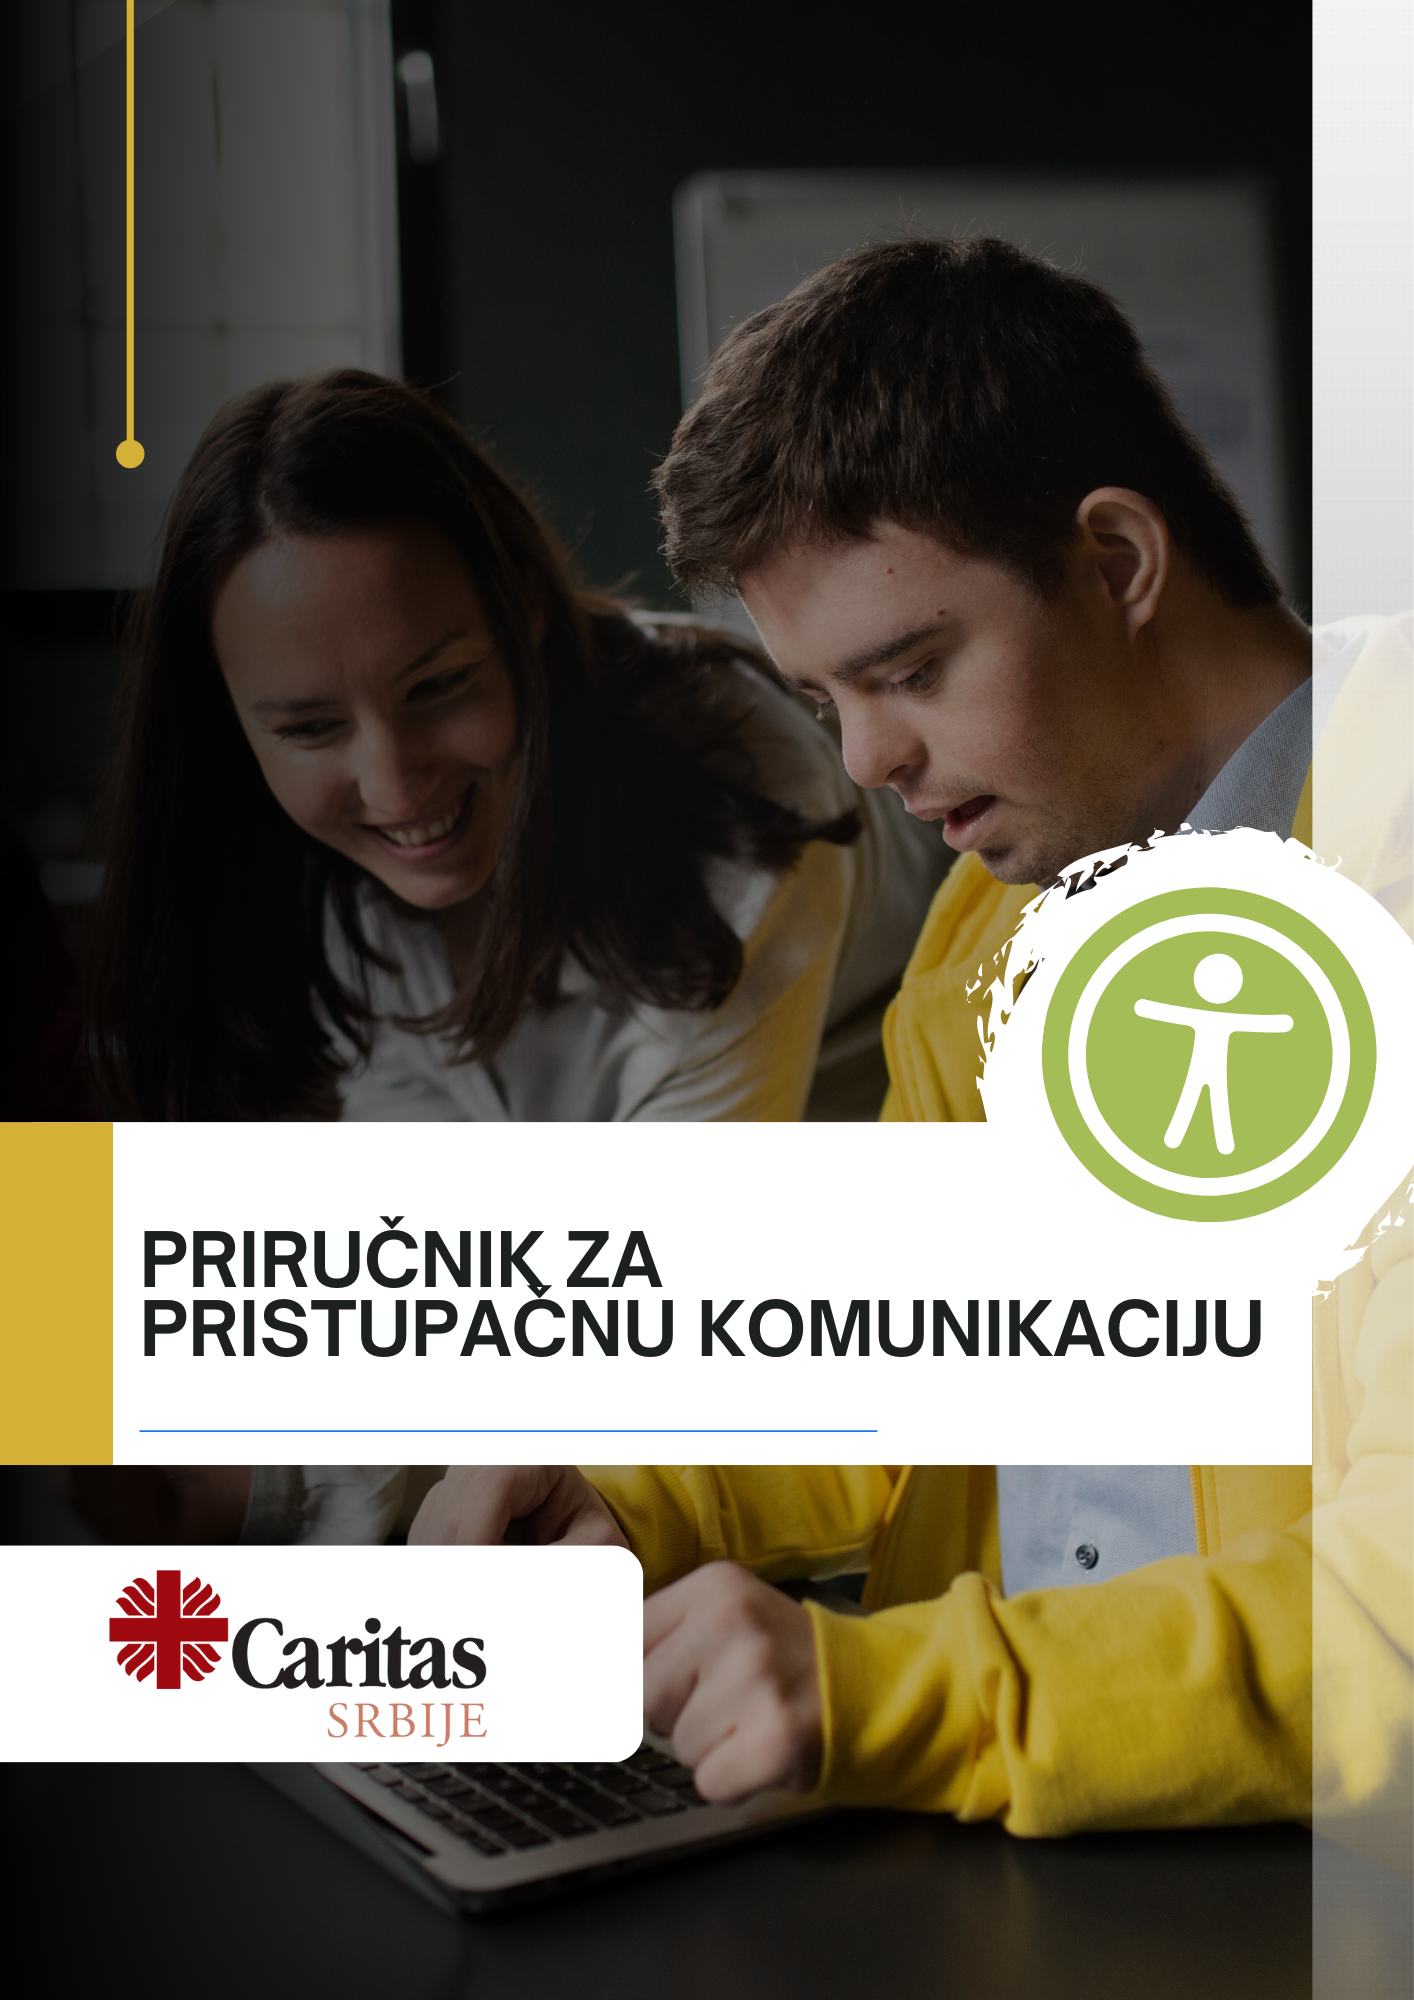 Naslovna stranica priručnika za Pristupačnu komunikaciju. Mladić i devojka se dodiruju, logo Caritas Srbije